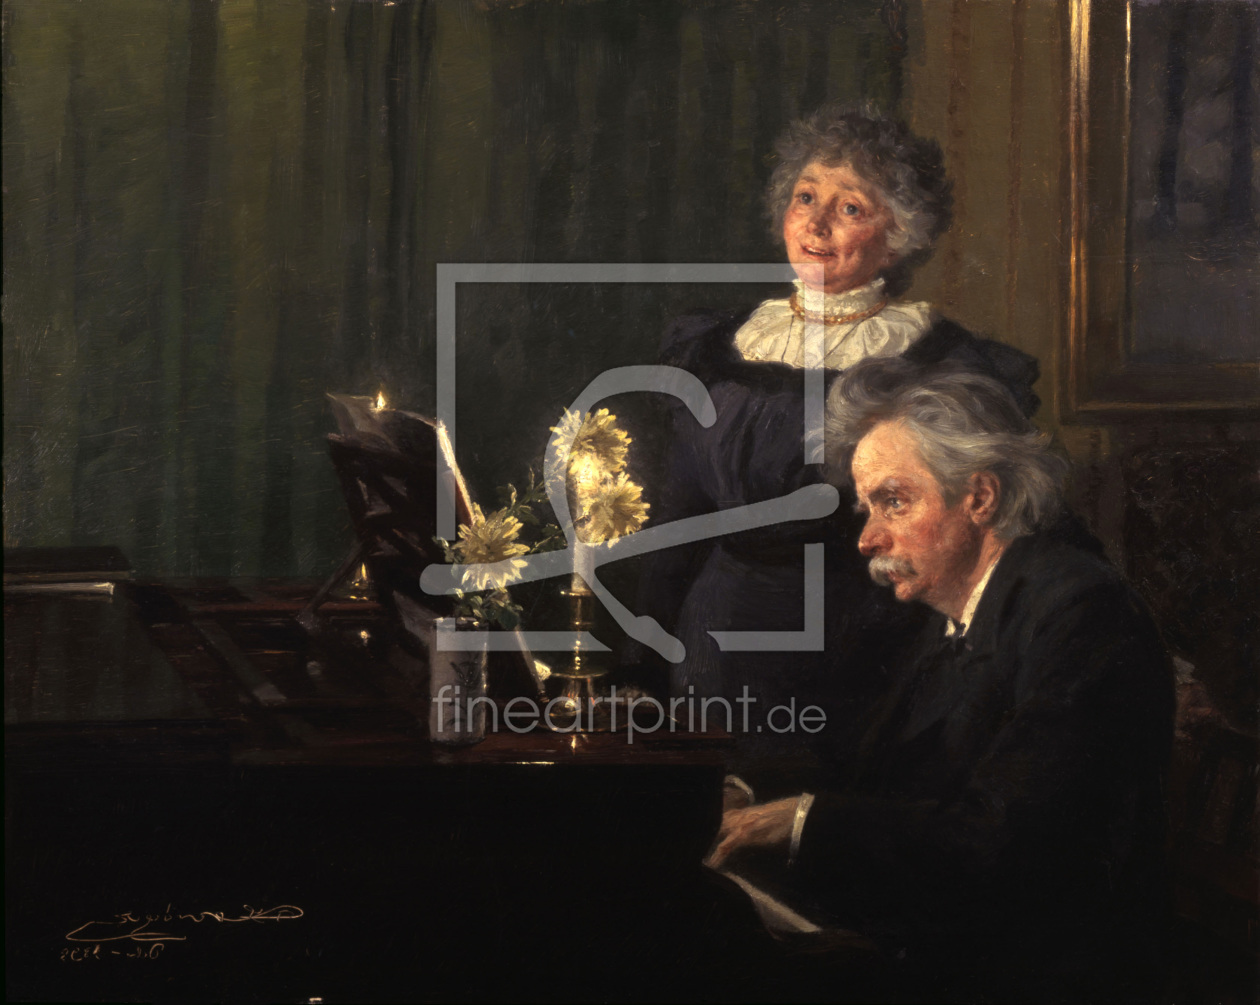 Bild-Nr.: 30003688 Edvard Grieg and wife/ Pain.b.KrÃ¶yer erstellt von Kroyer, Peter Severin